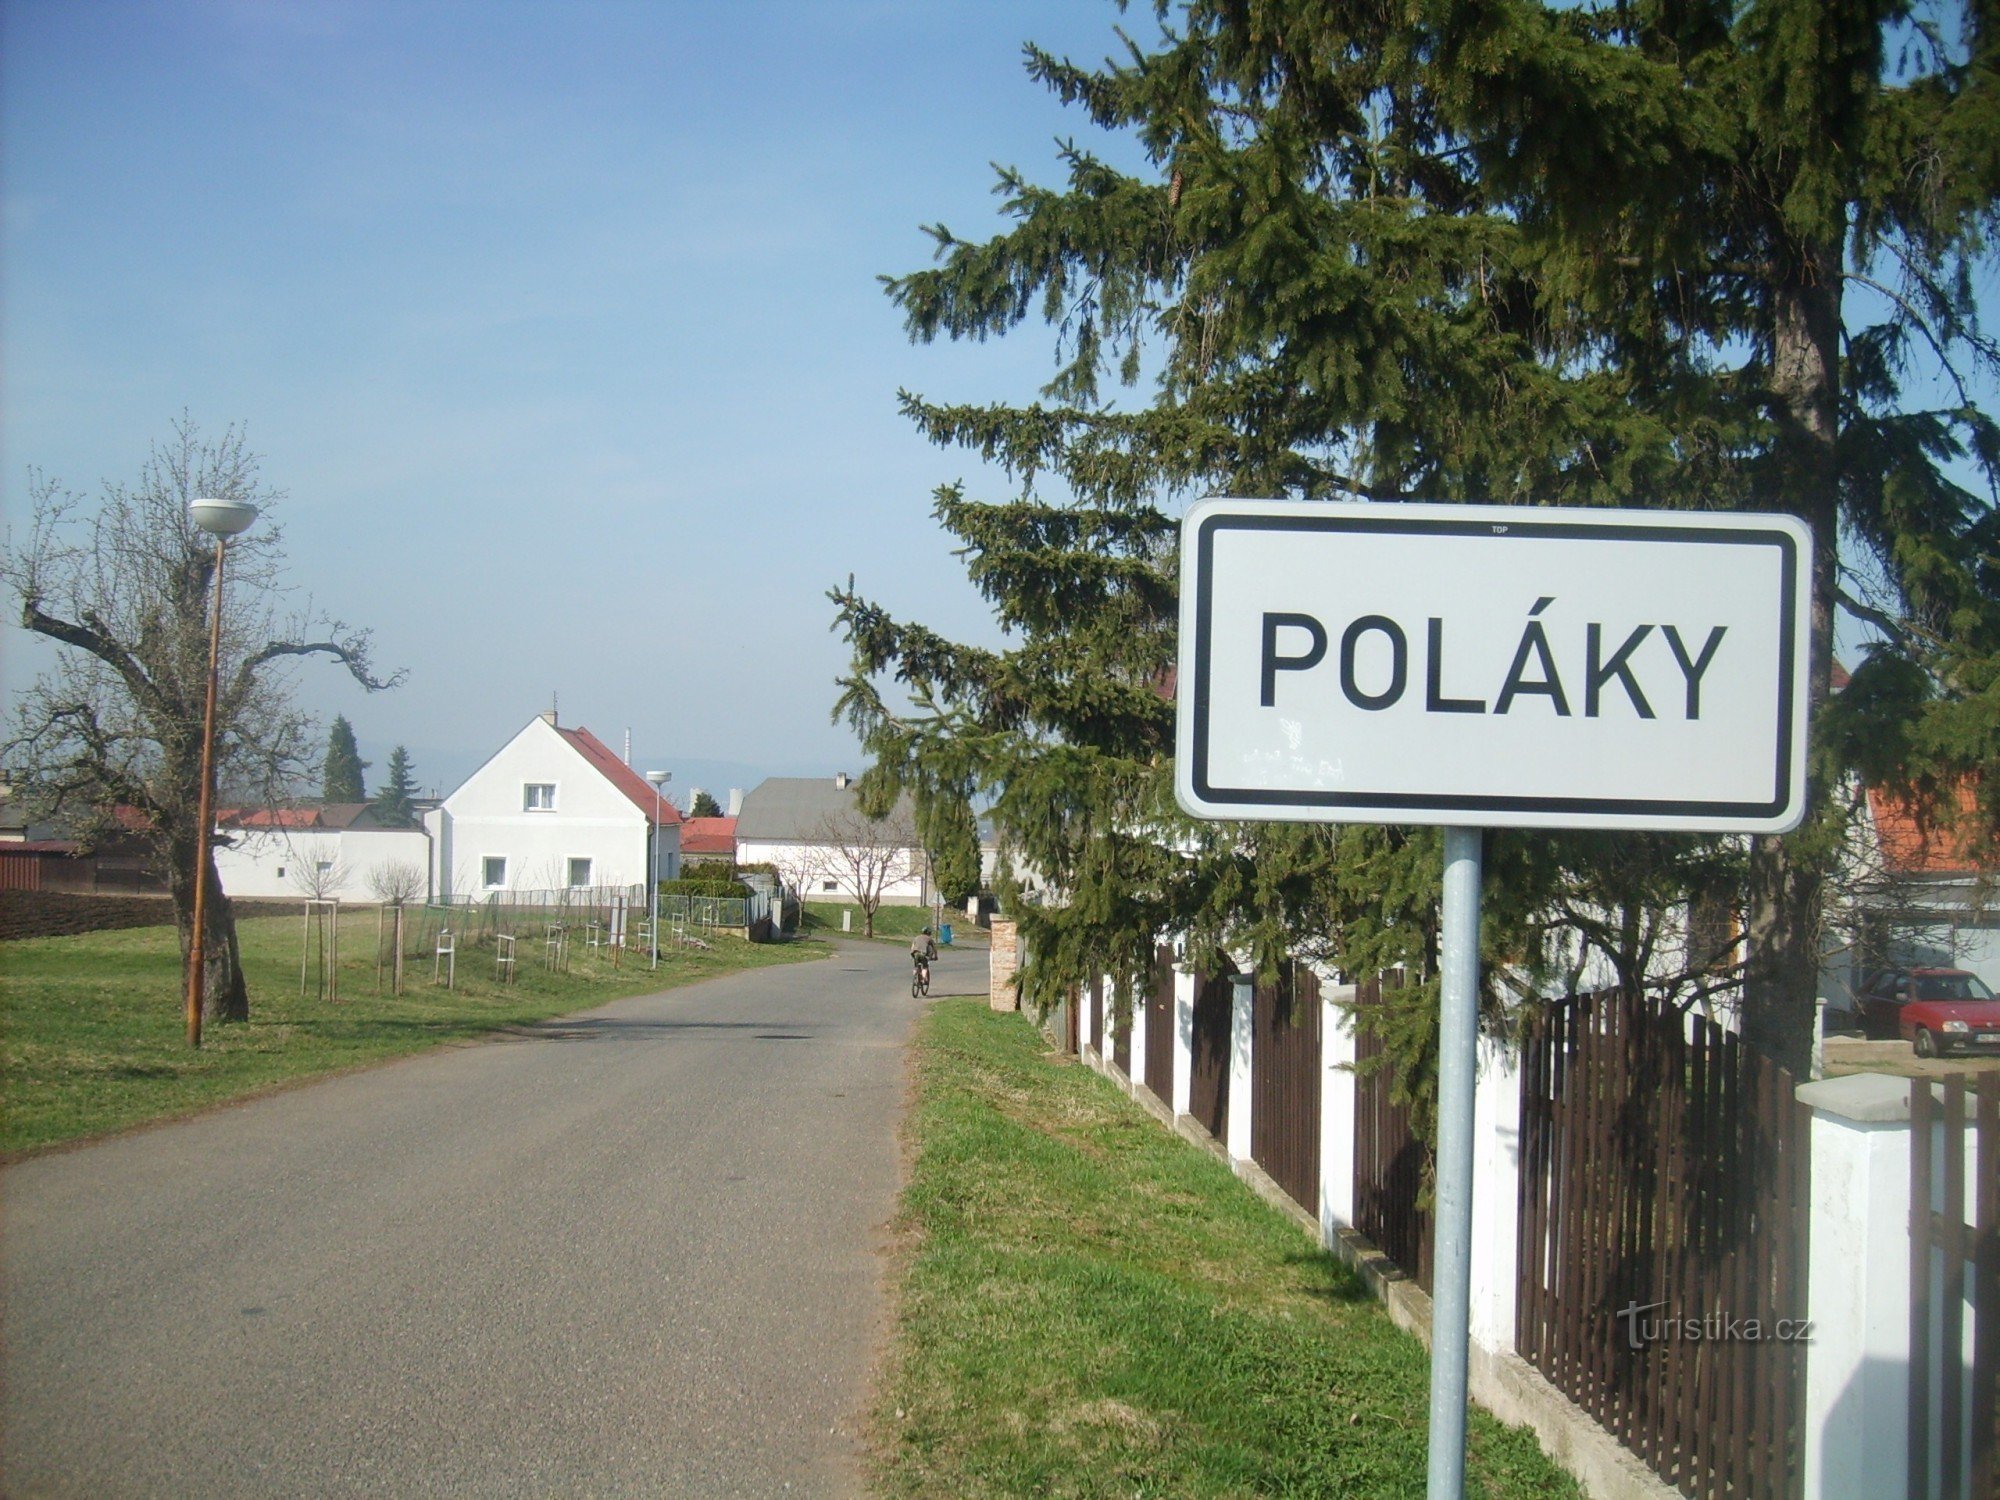 assentamento de poloneses